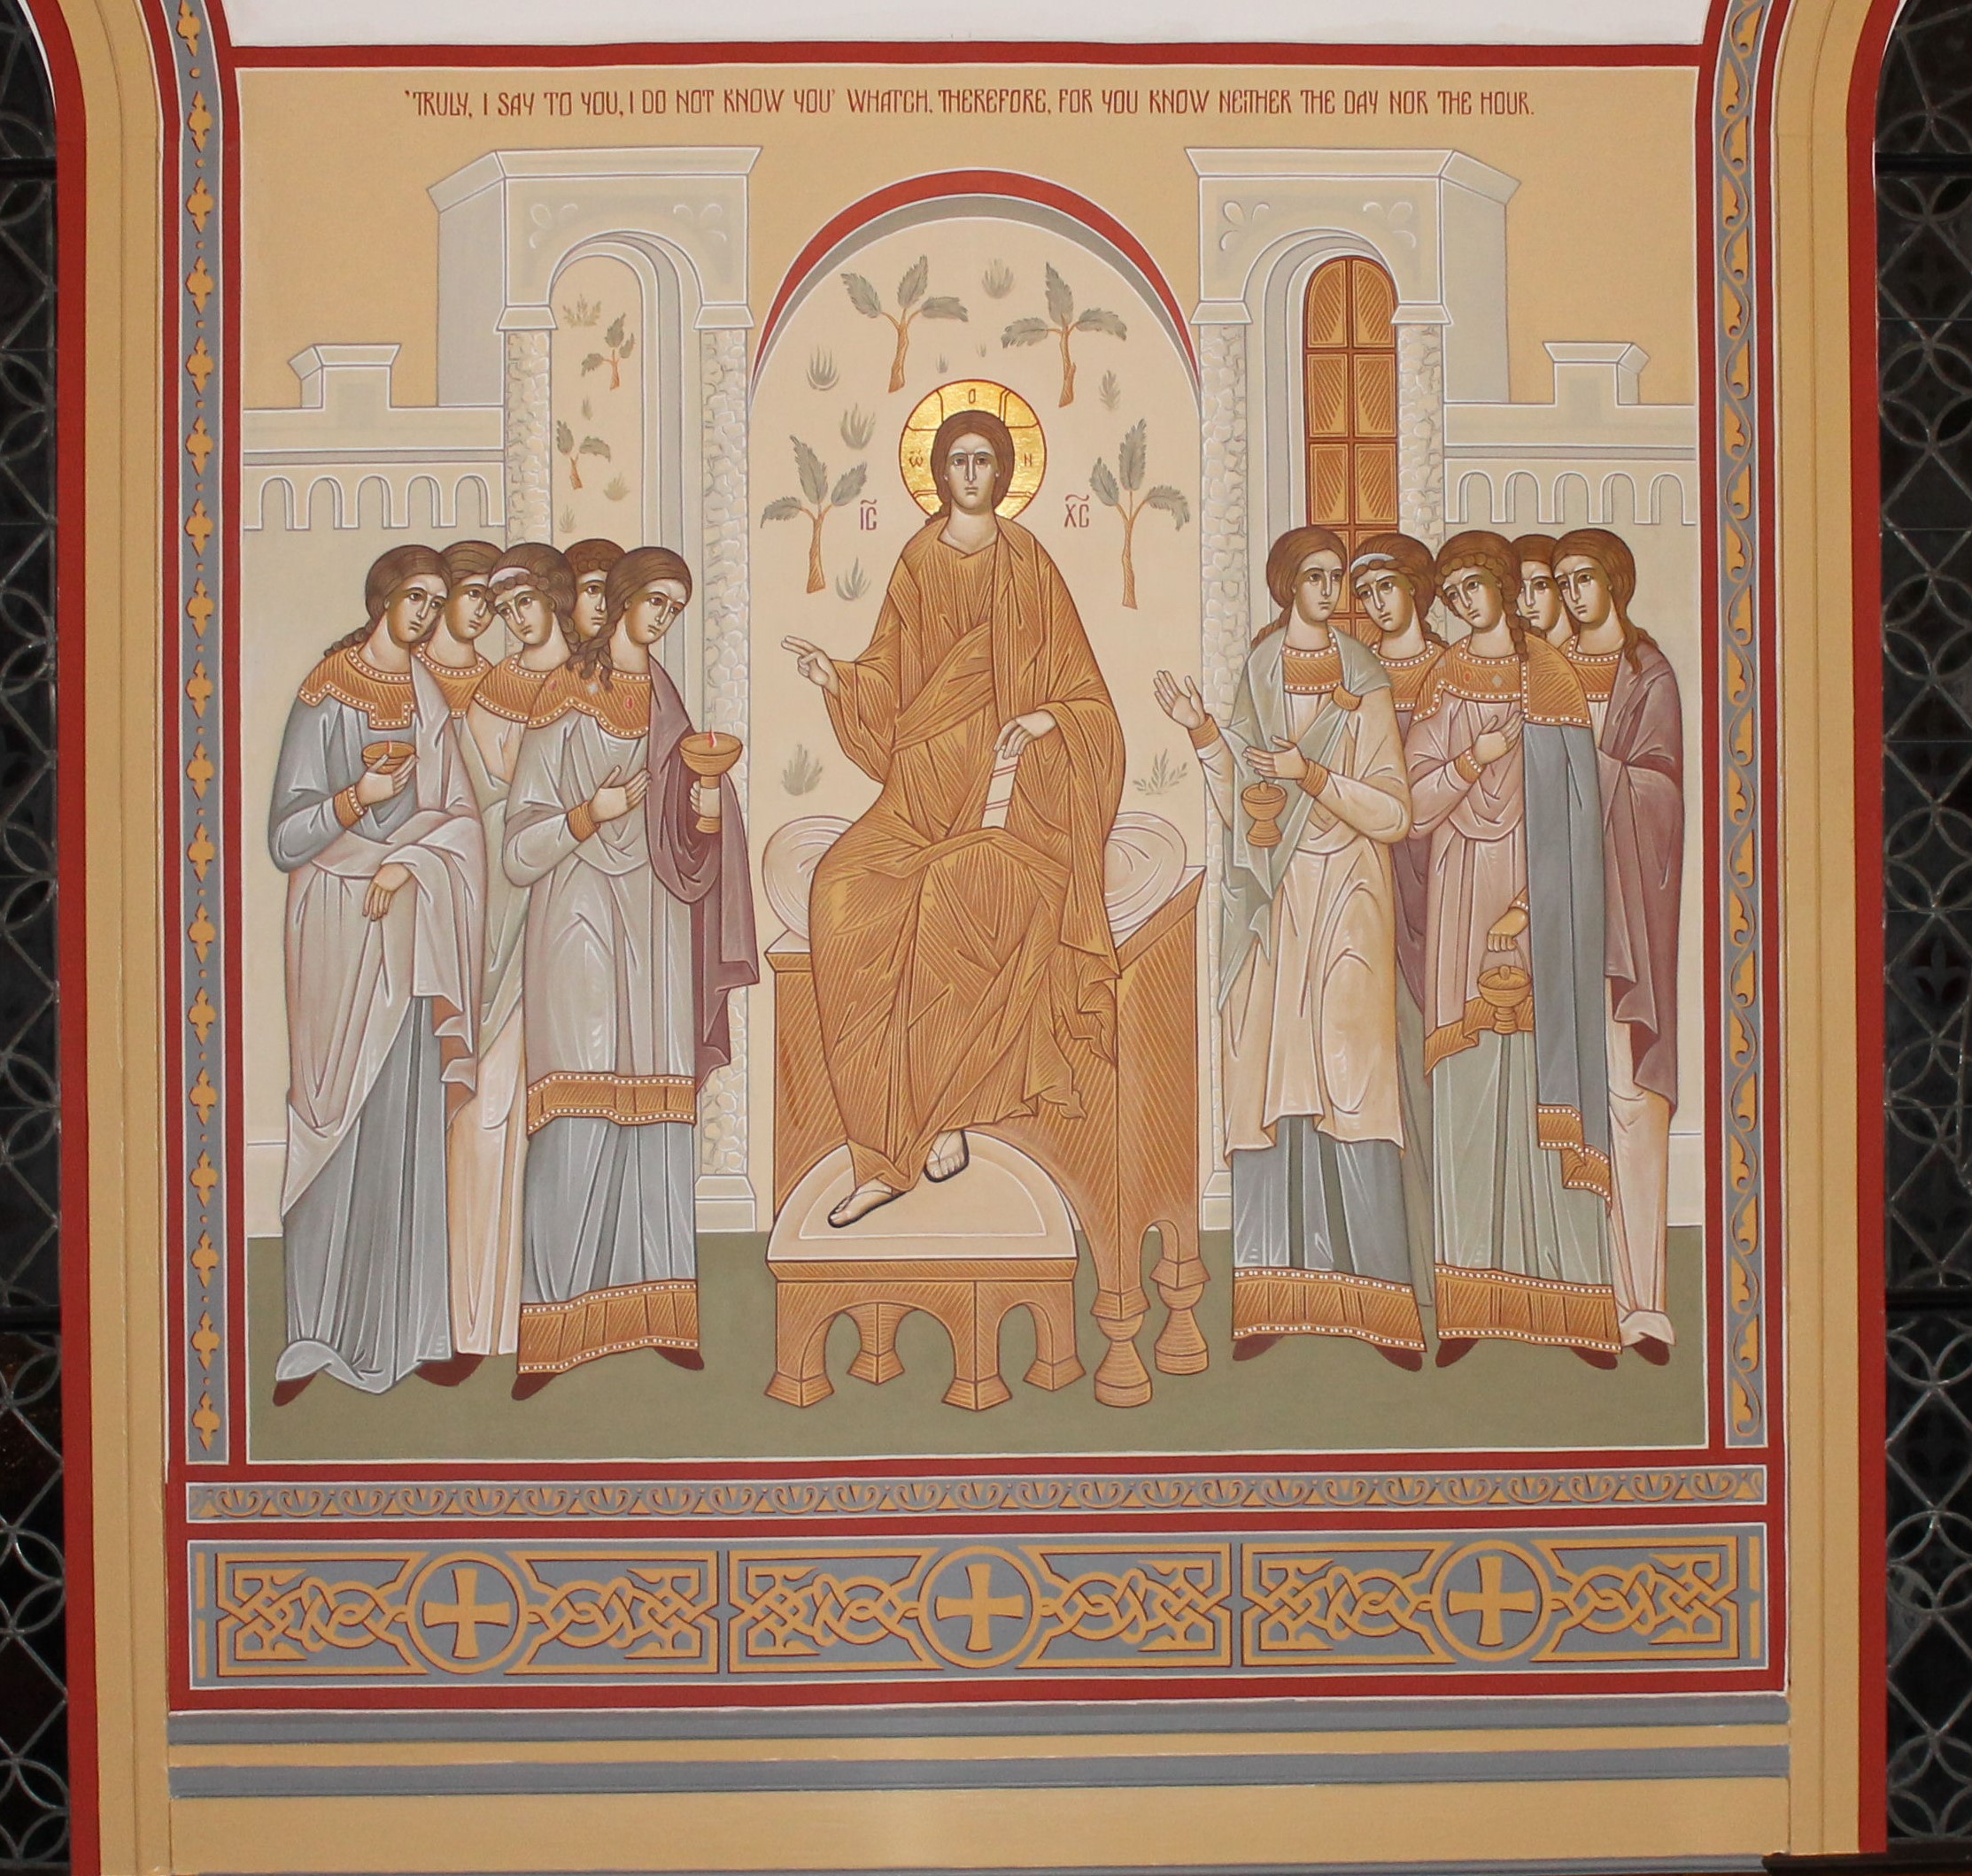 Parabel of the Ten Virgins - St. Nicholas Orthodox Church Salem MA by Anna Gouriev-Pokrovsky